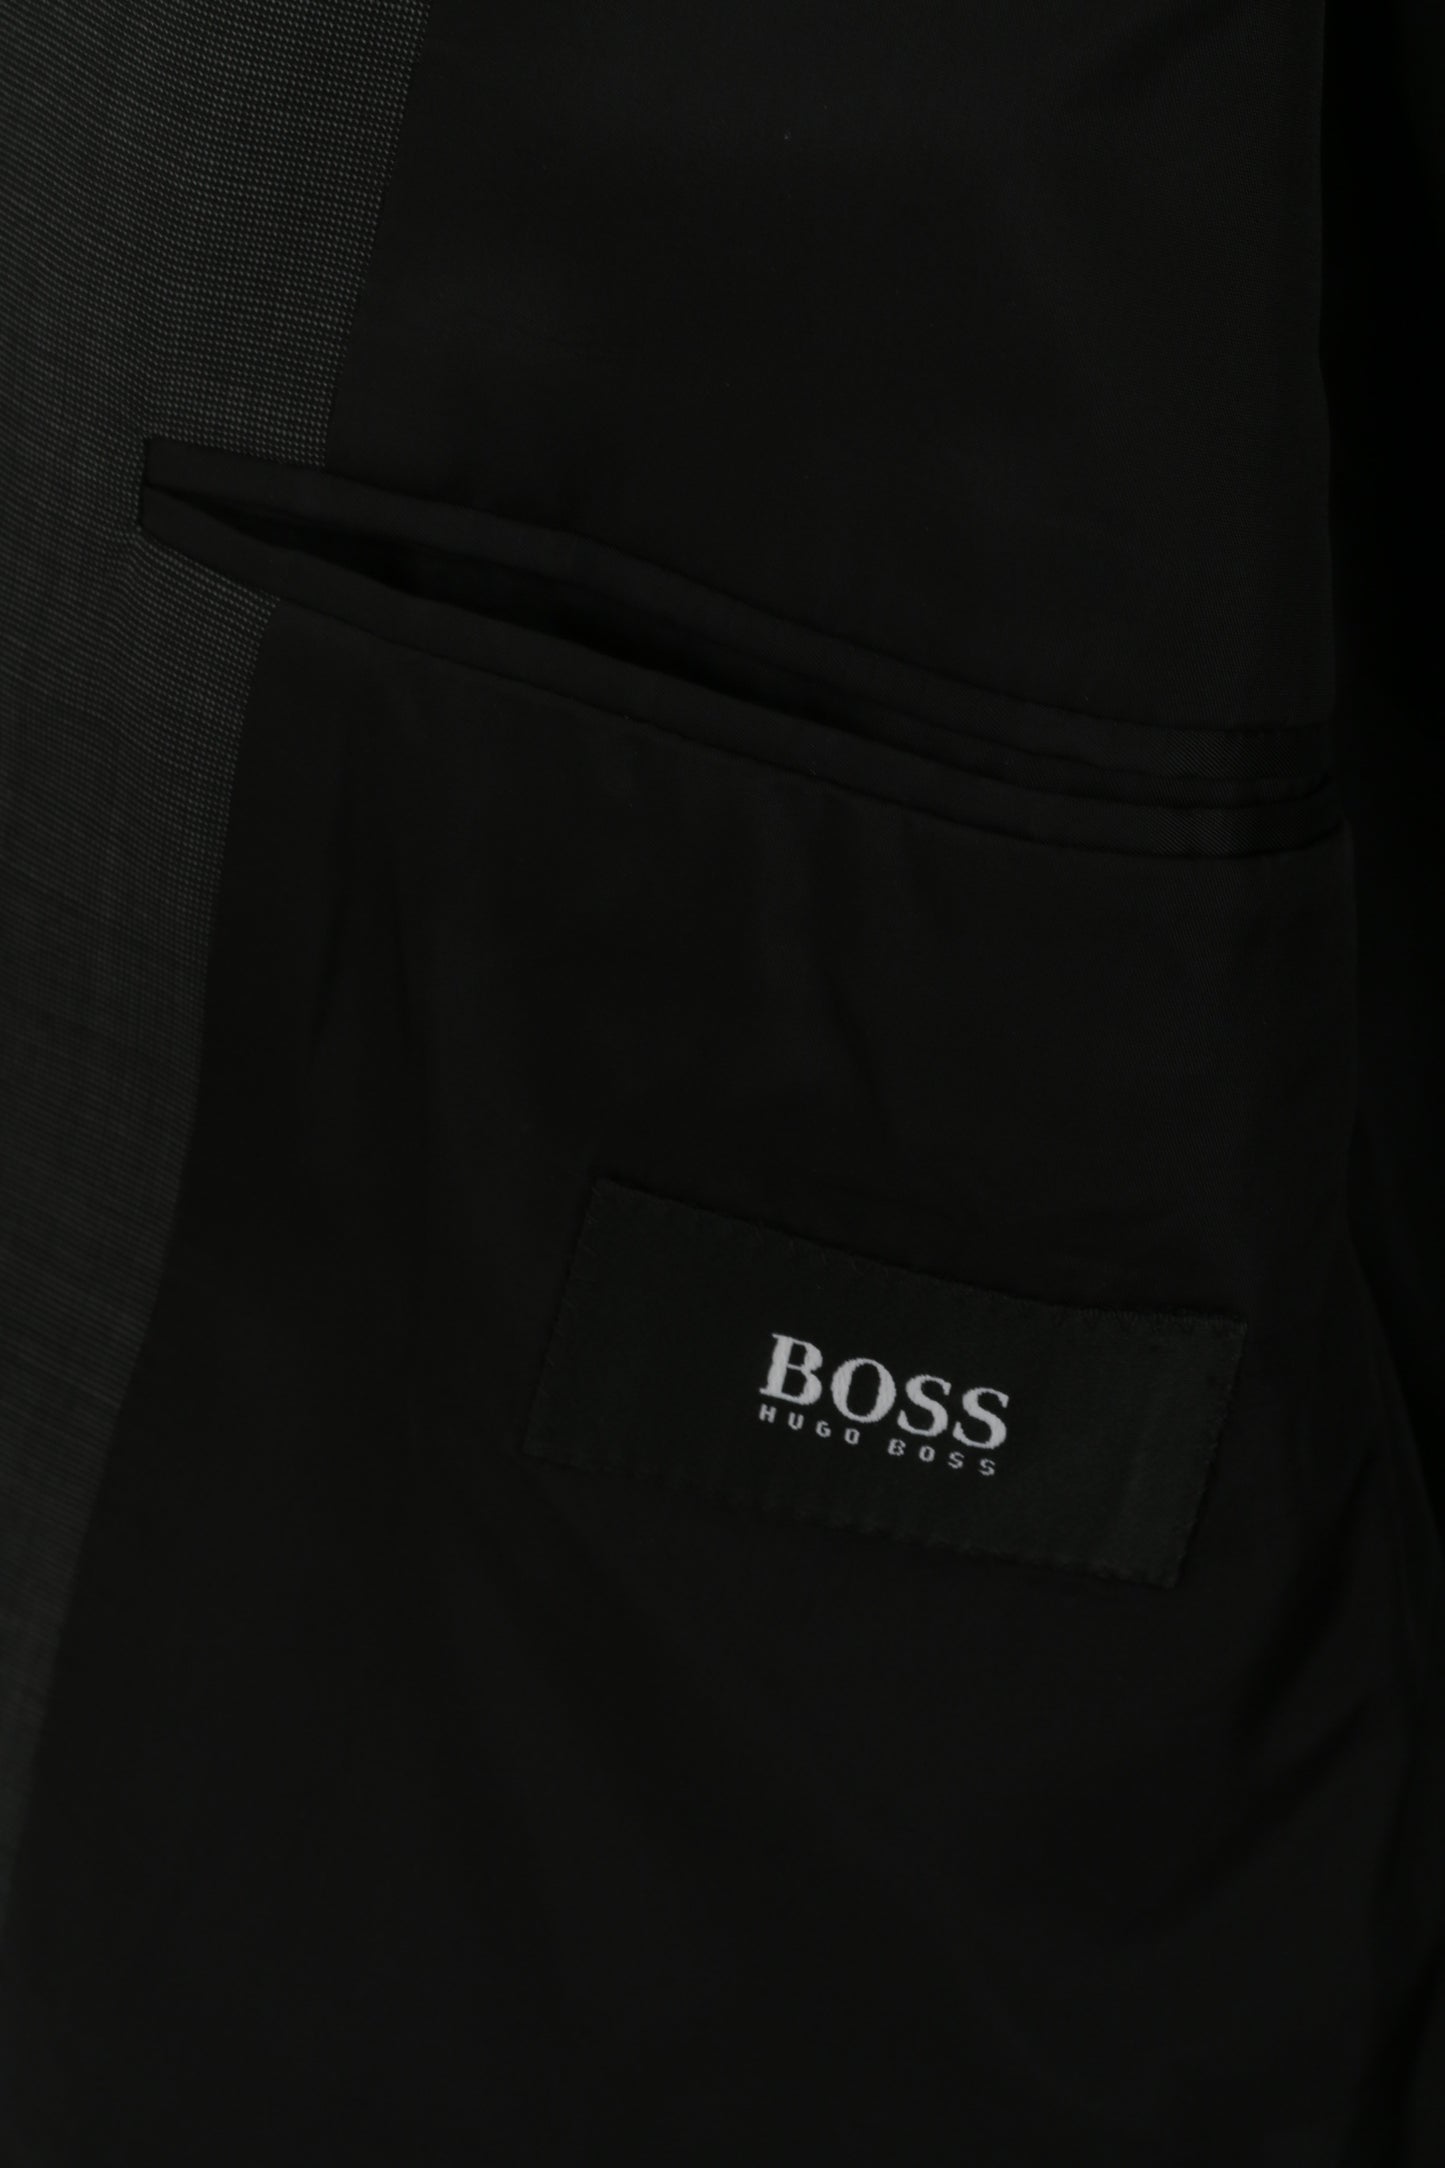 Hugo Boss Hommes 25 40 Blazer Charbon De Laine Vierge Da Vinci Veste Simple Boutonnage